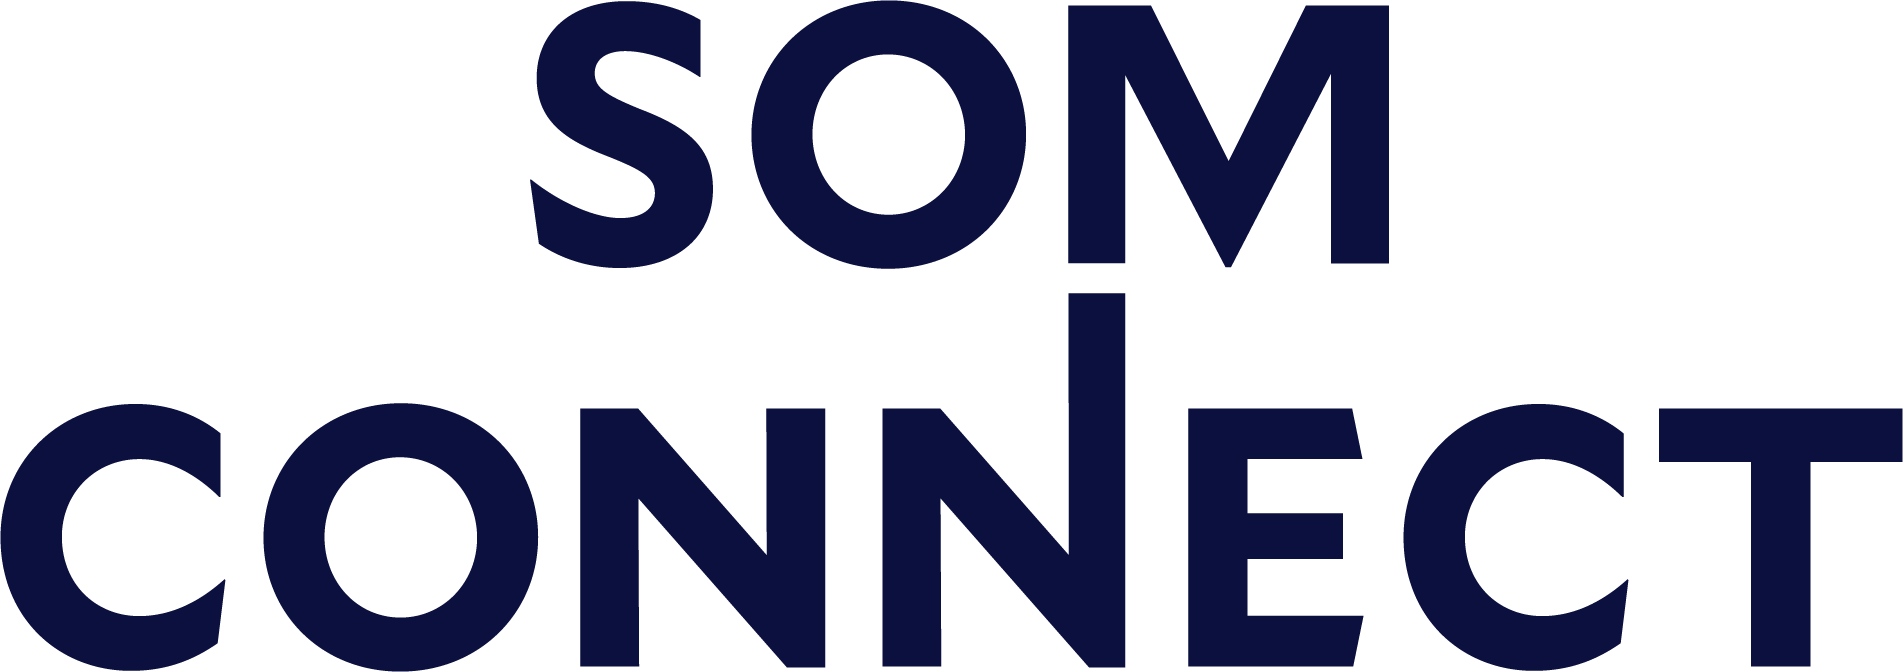 Yale SOM Connect logo